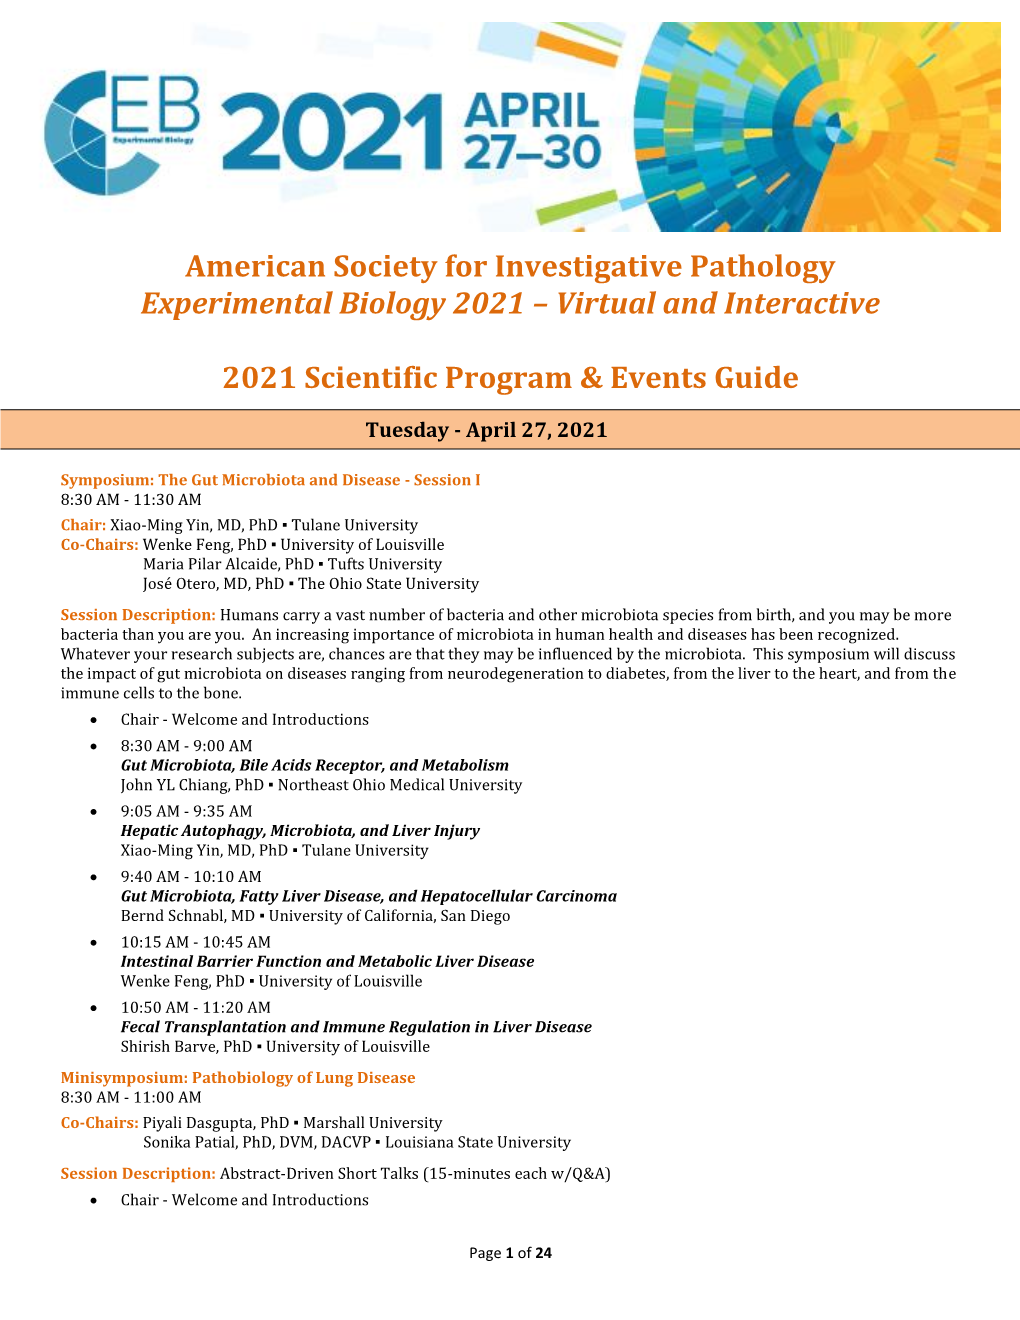 Scientific Program & Events Guide